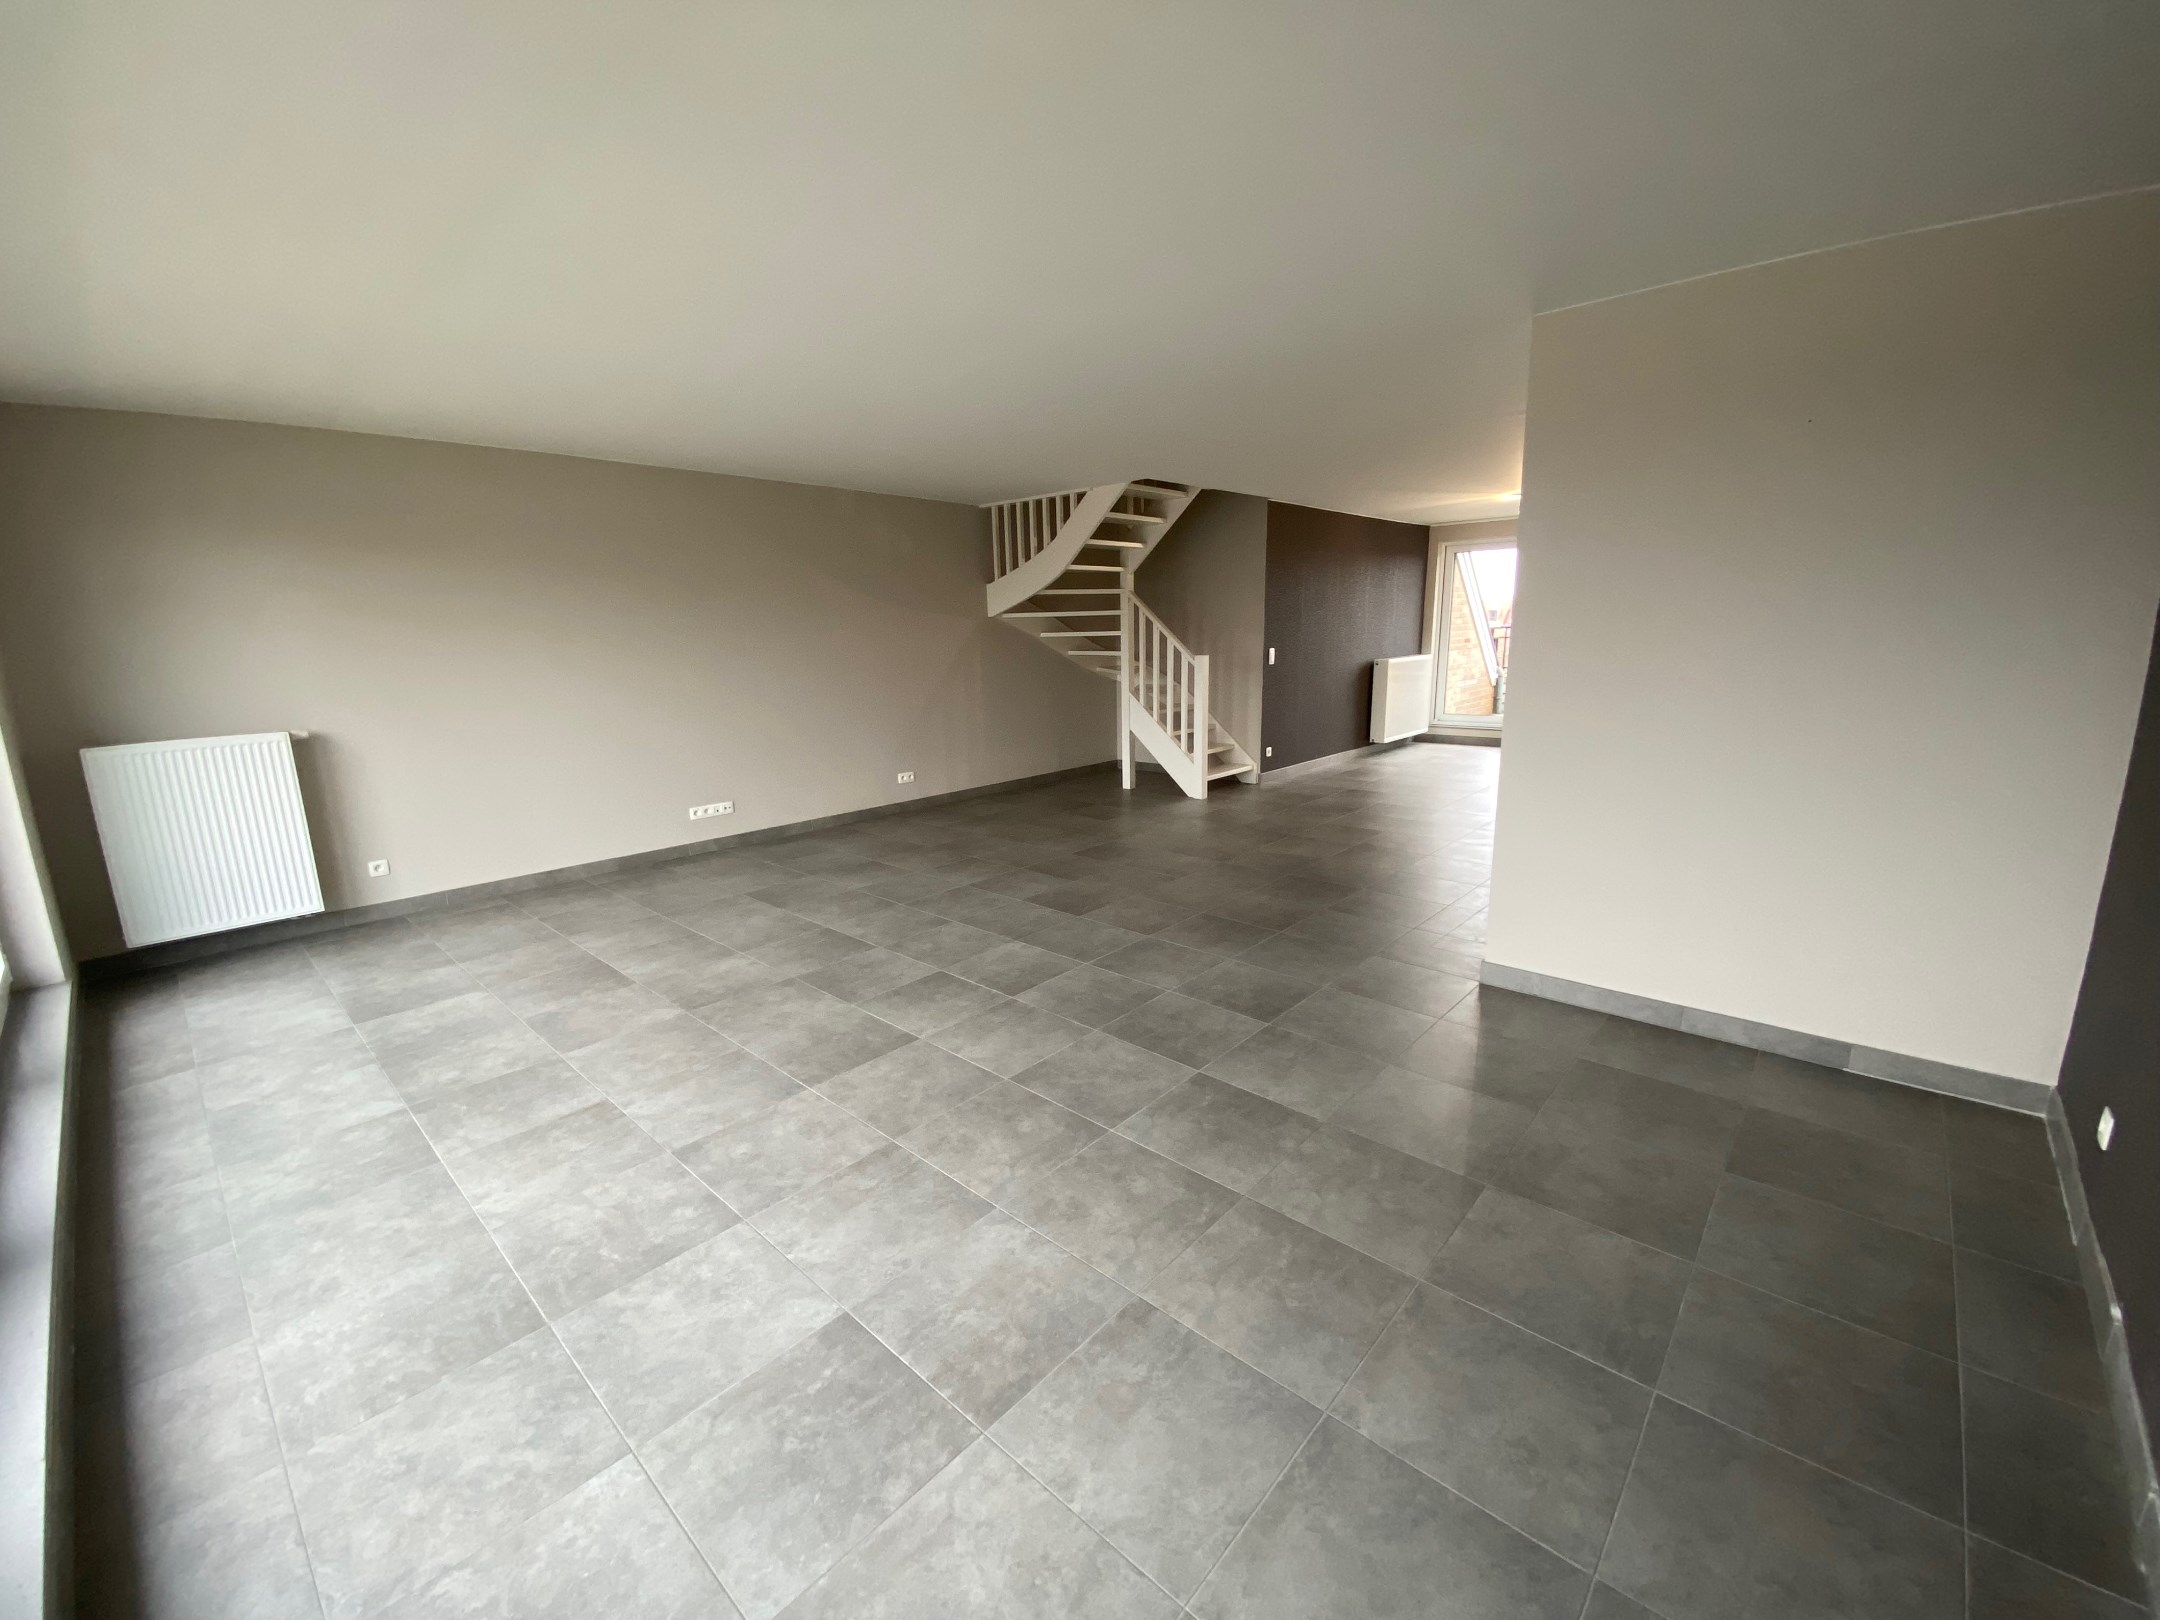 Non meubl&#233; - Appartement en duplex au centre de Knokke-Heist avec 3 chambres. 